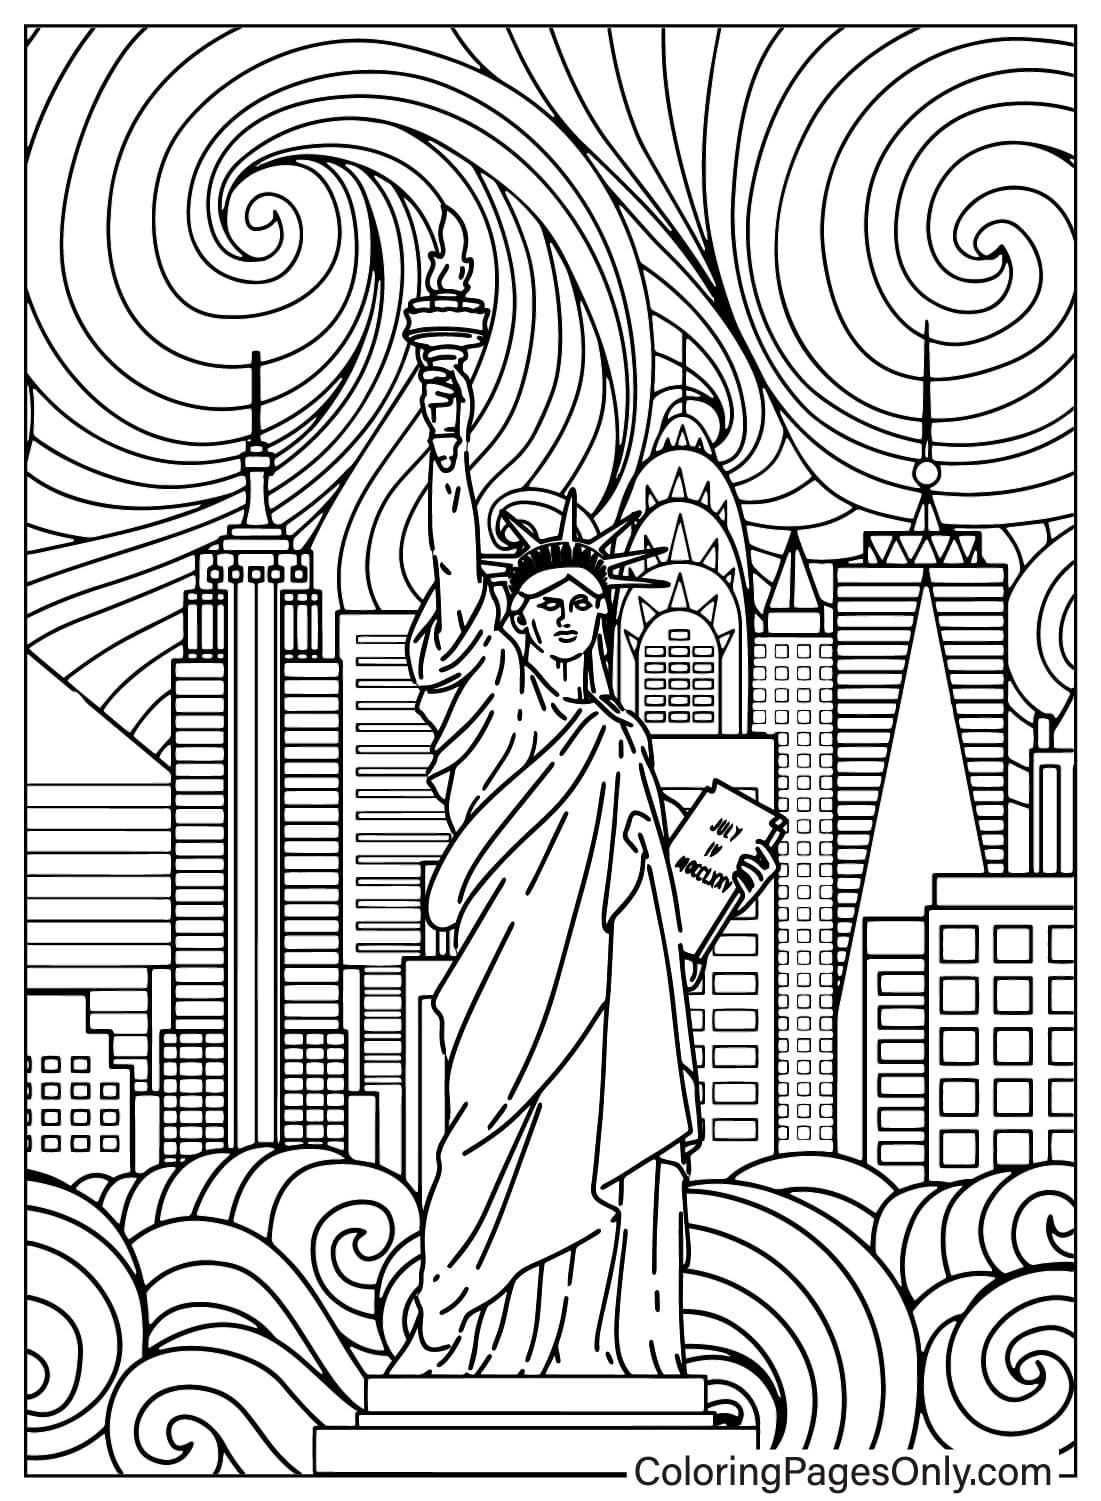 Página para colorear de la Estatua de la Libertad para adultos de la Estatua de la Libertad